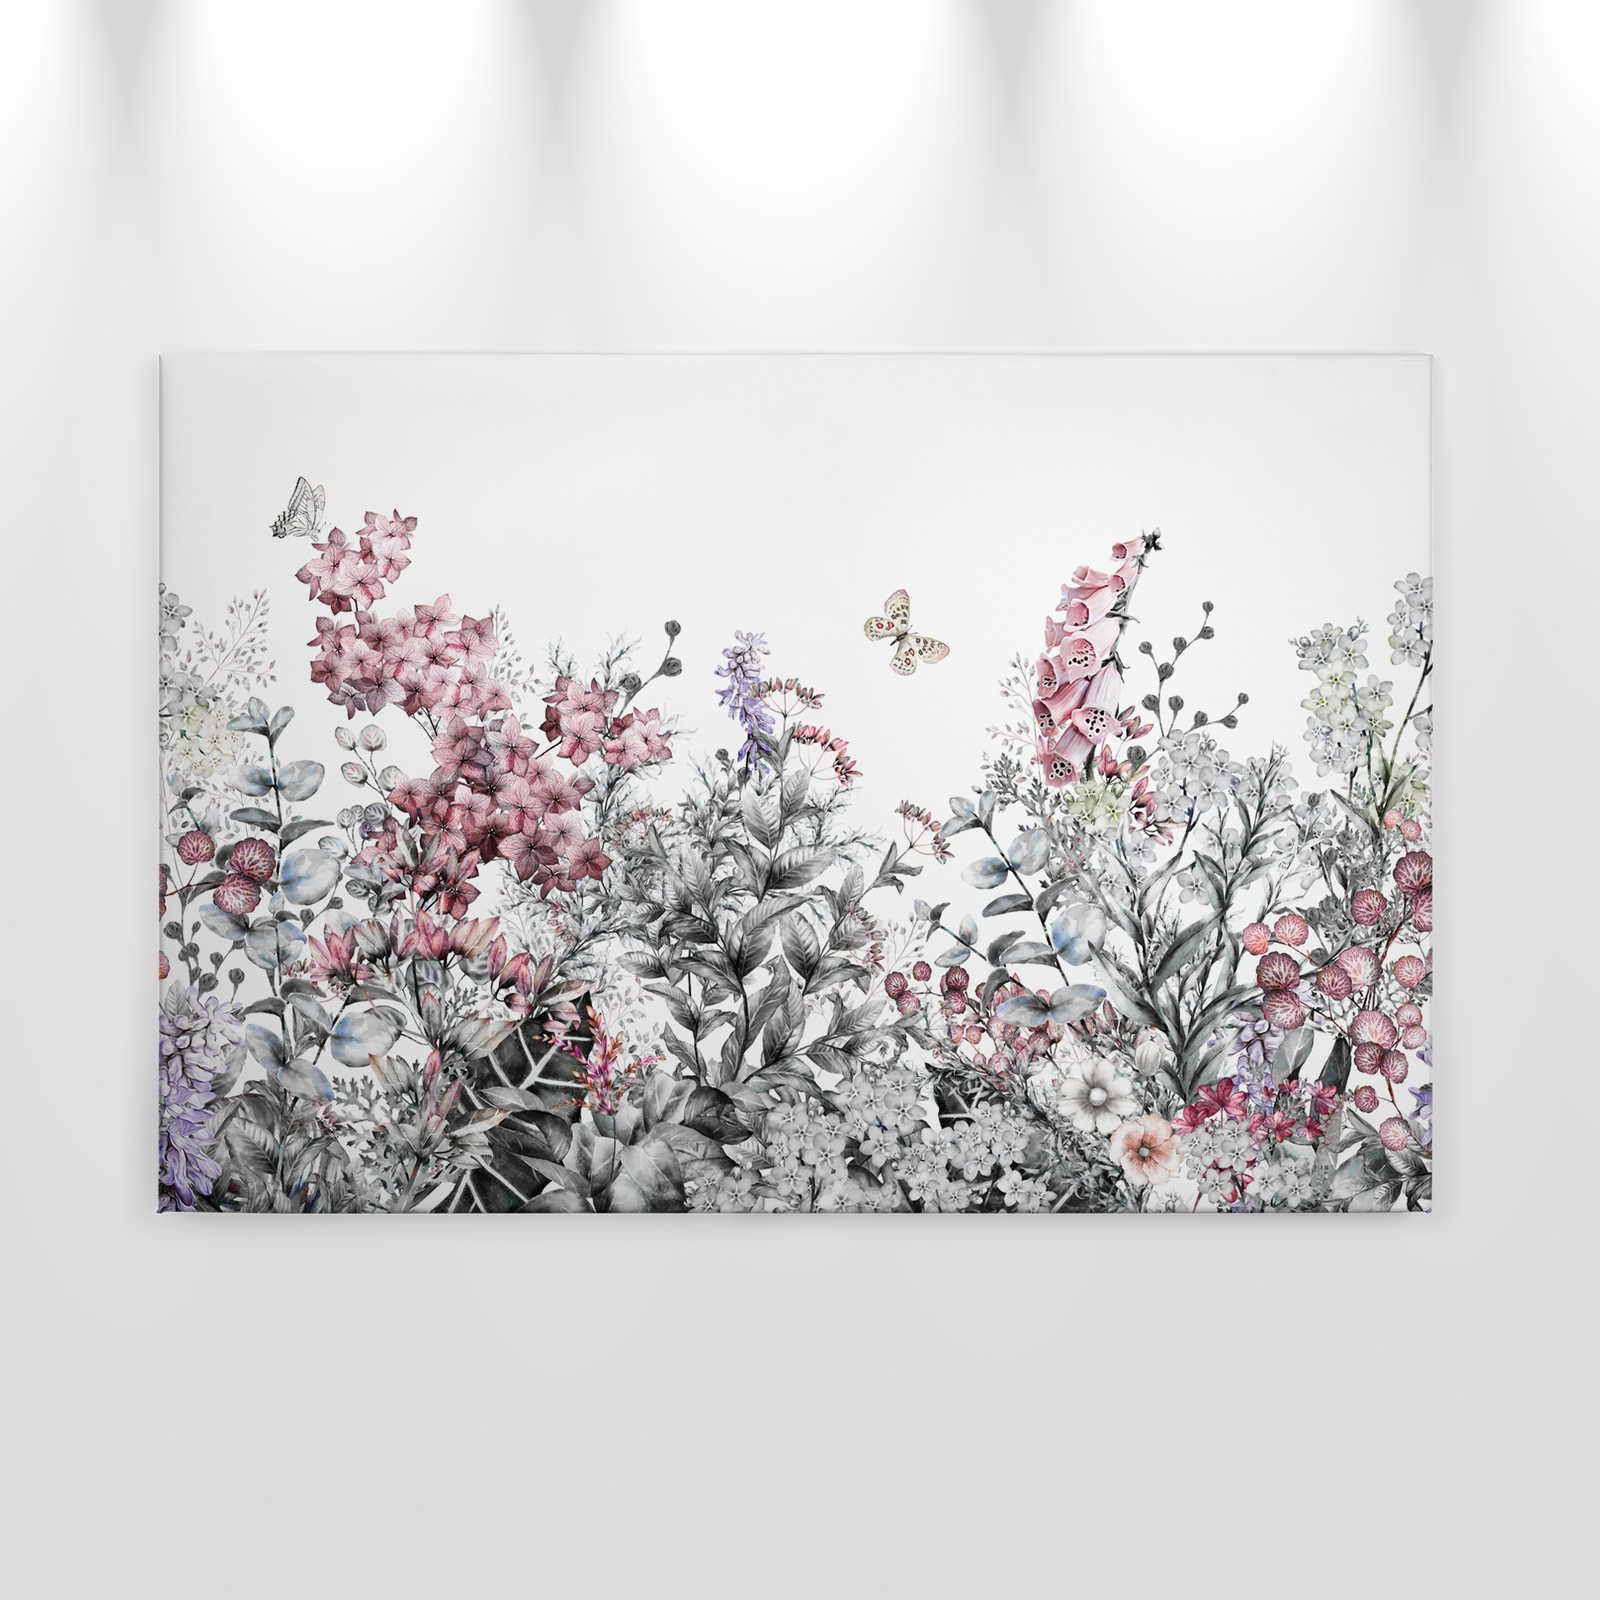             Canvas met effen geschilderde bloemen - 0,90 m x 0,60 m
        